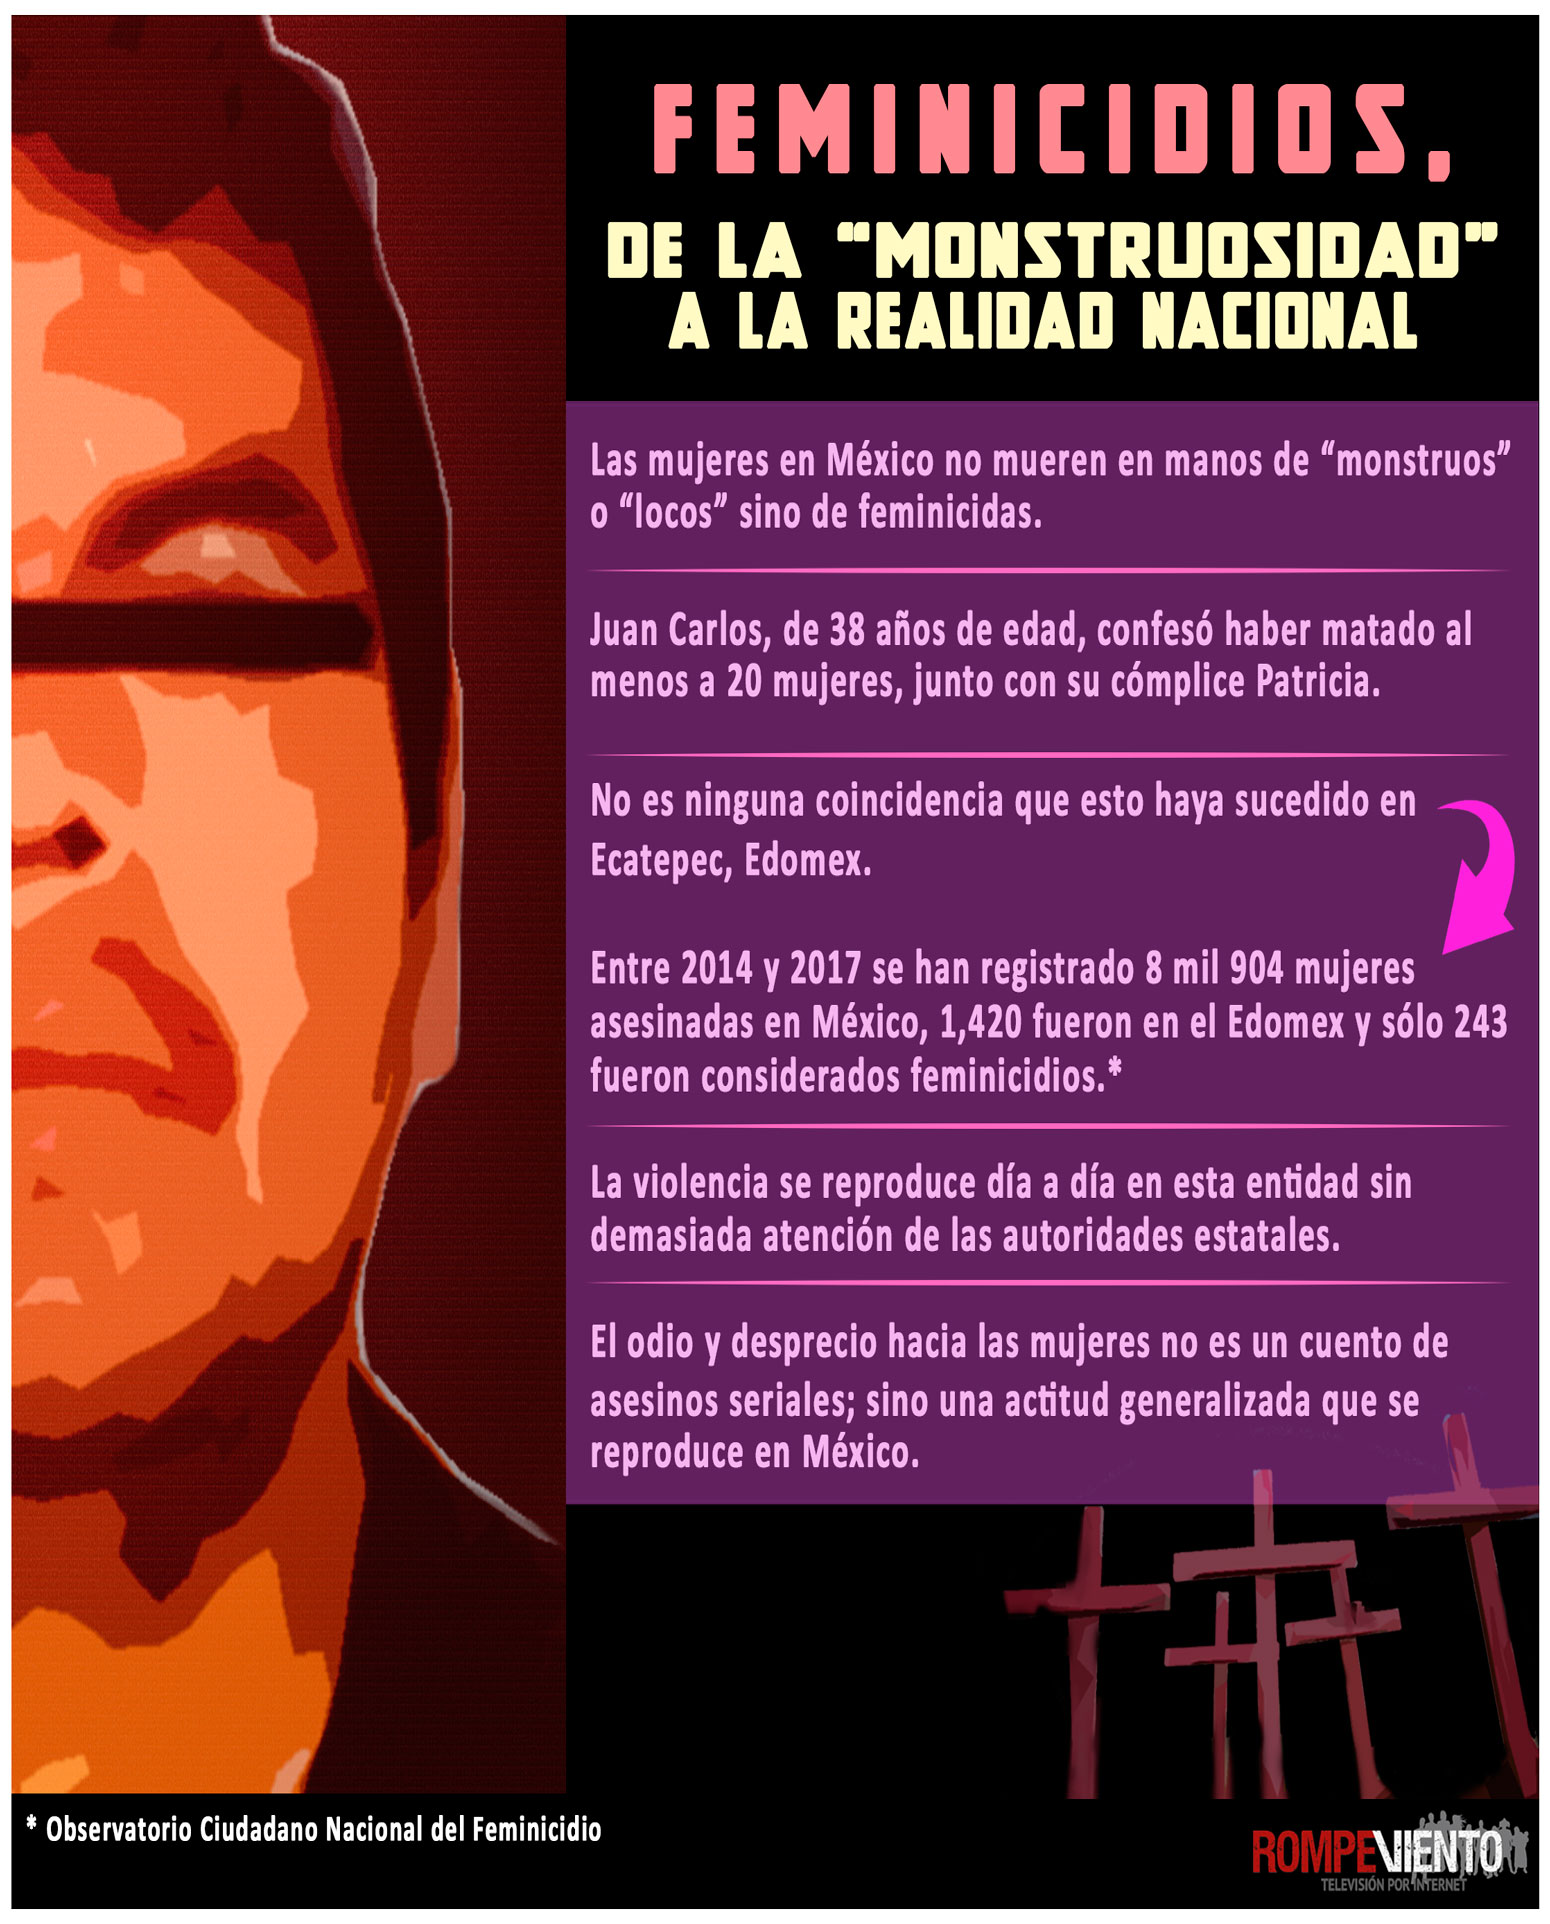 Feminicidios, de la "monstruosidad" a la realidad - 12/10/2018